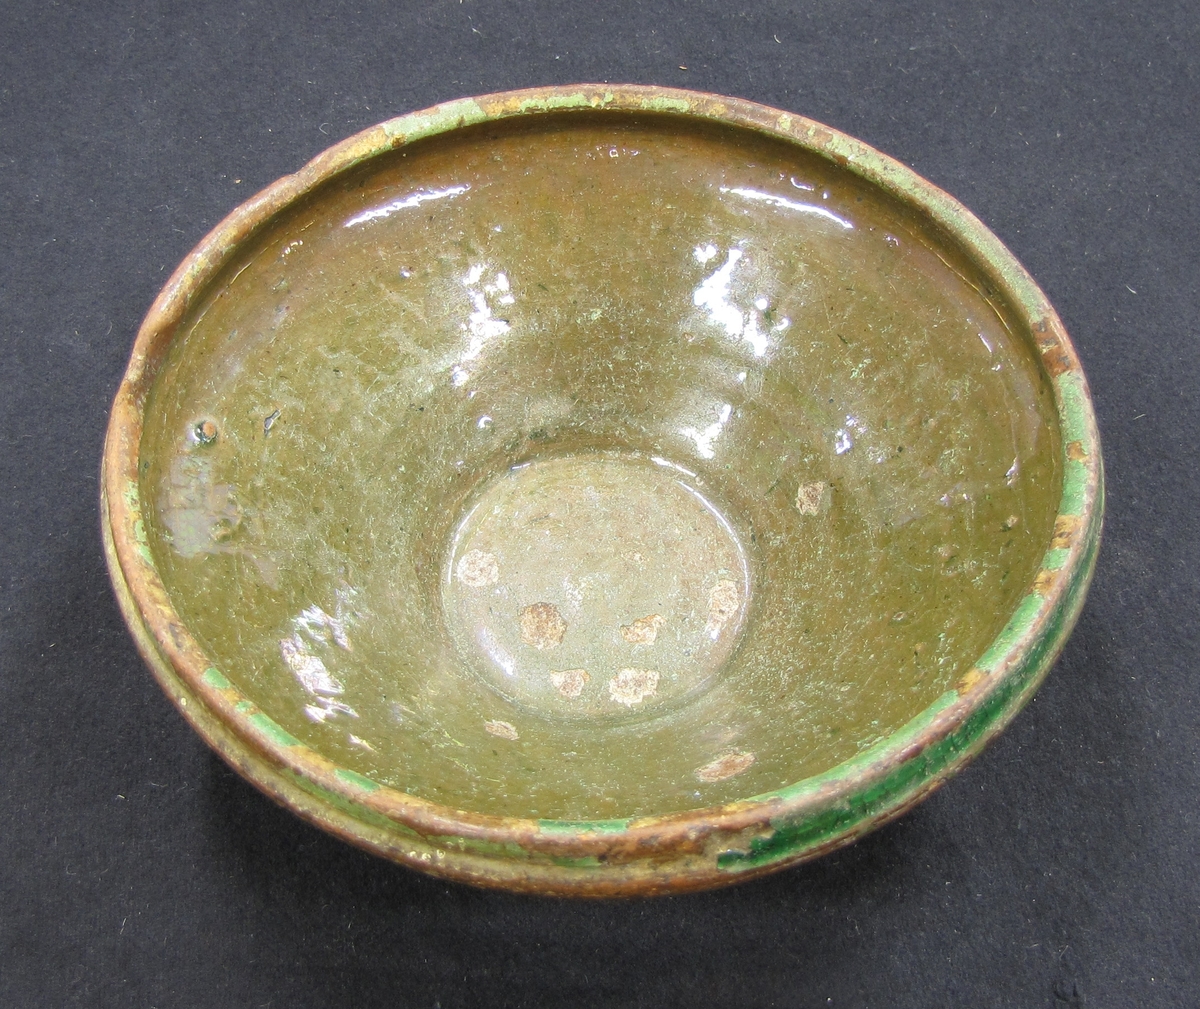 Skål, lera, glaserad i grönt.

Från Bolstad socken, Dalsland.

(Från tidigare katalog) Keramik, urna, 1 st.